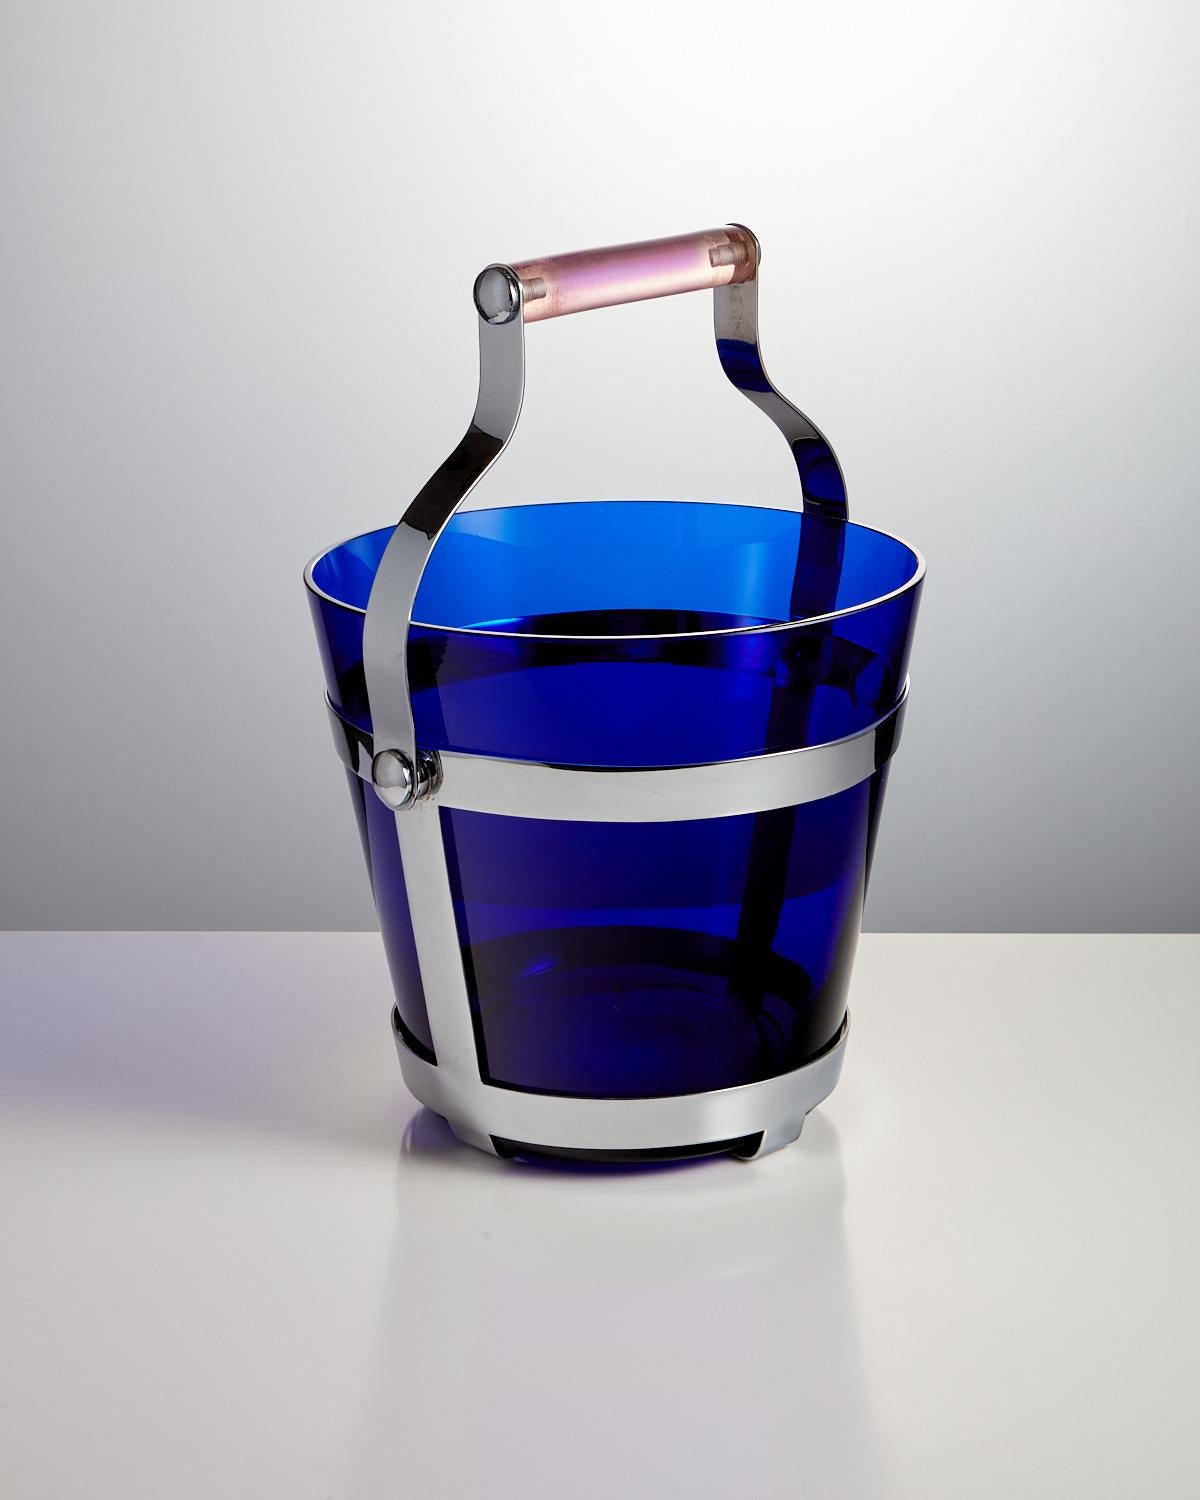 Seau à glace en verre bleu du milieu du 20ème siècle, refroidisseur de champagne avec une poignée en lucite rose, origine Espagne Circa 1960.

Ce superbe seau à glace est en excellent état.

Conçu pour être à la fois élégant et pratique, le seau à